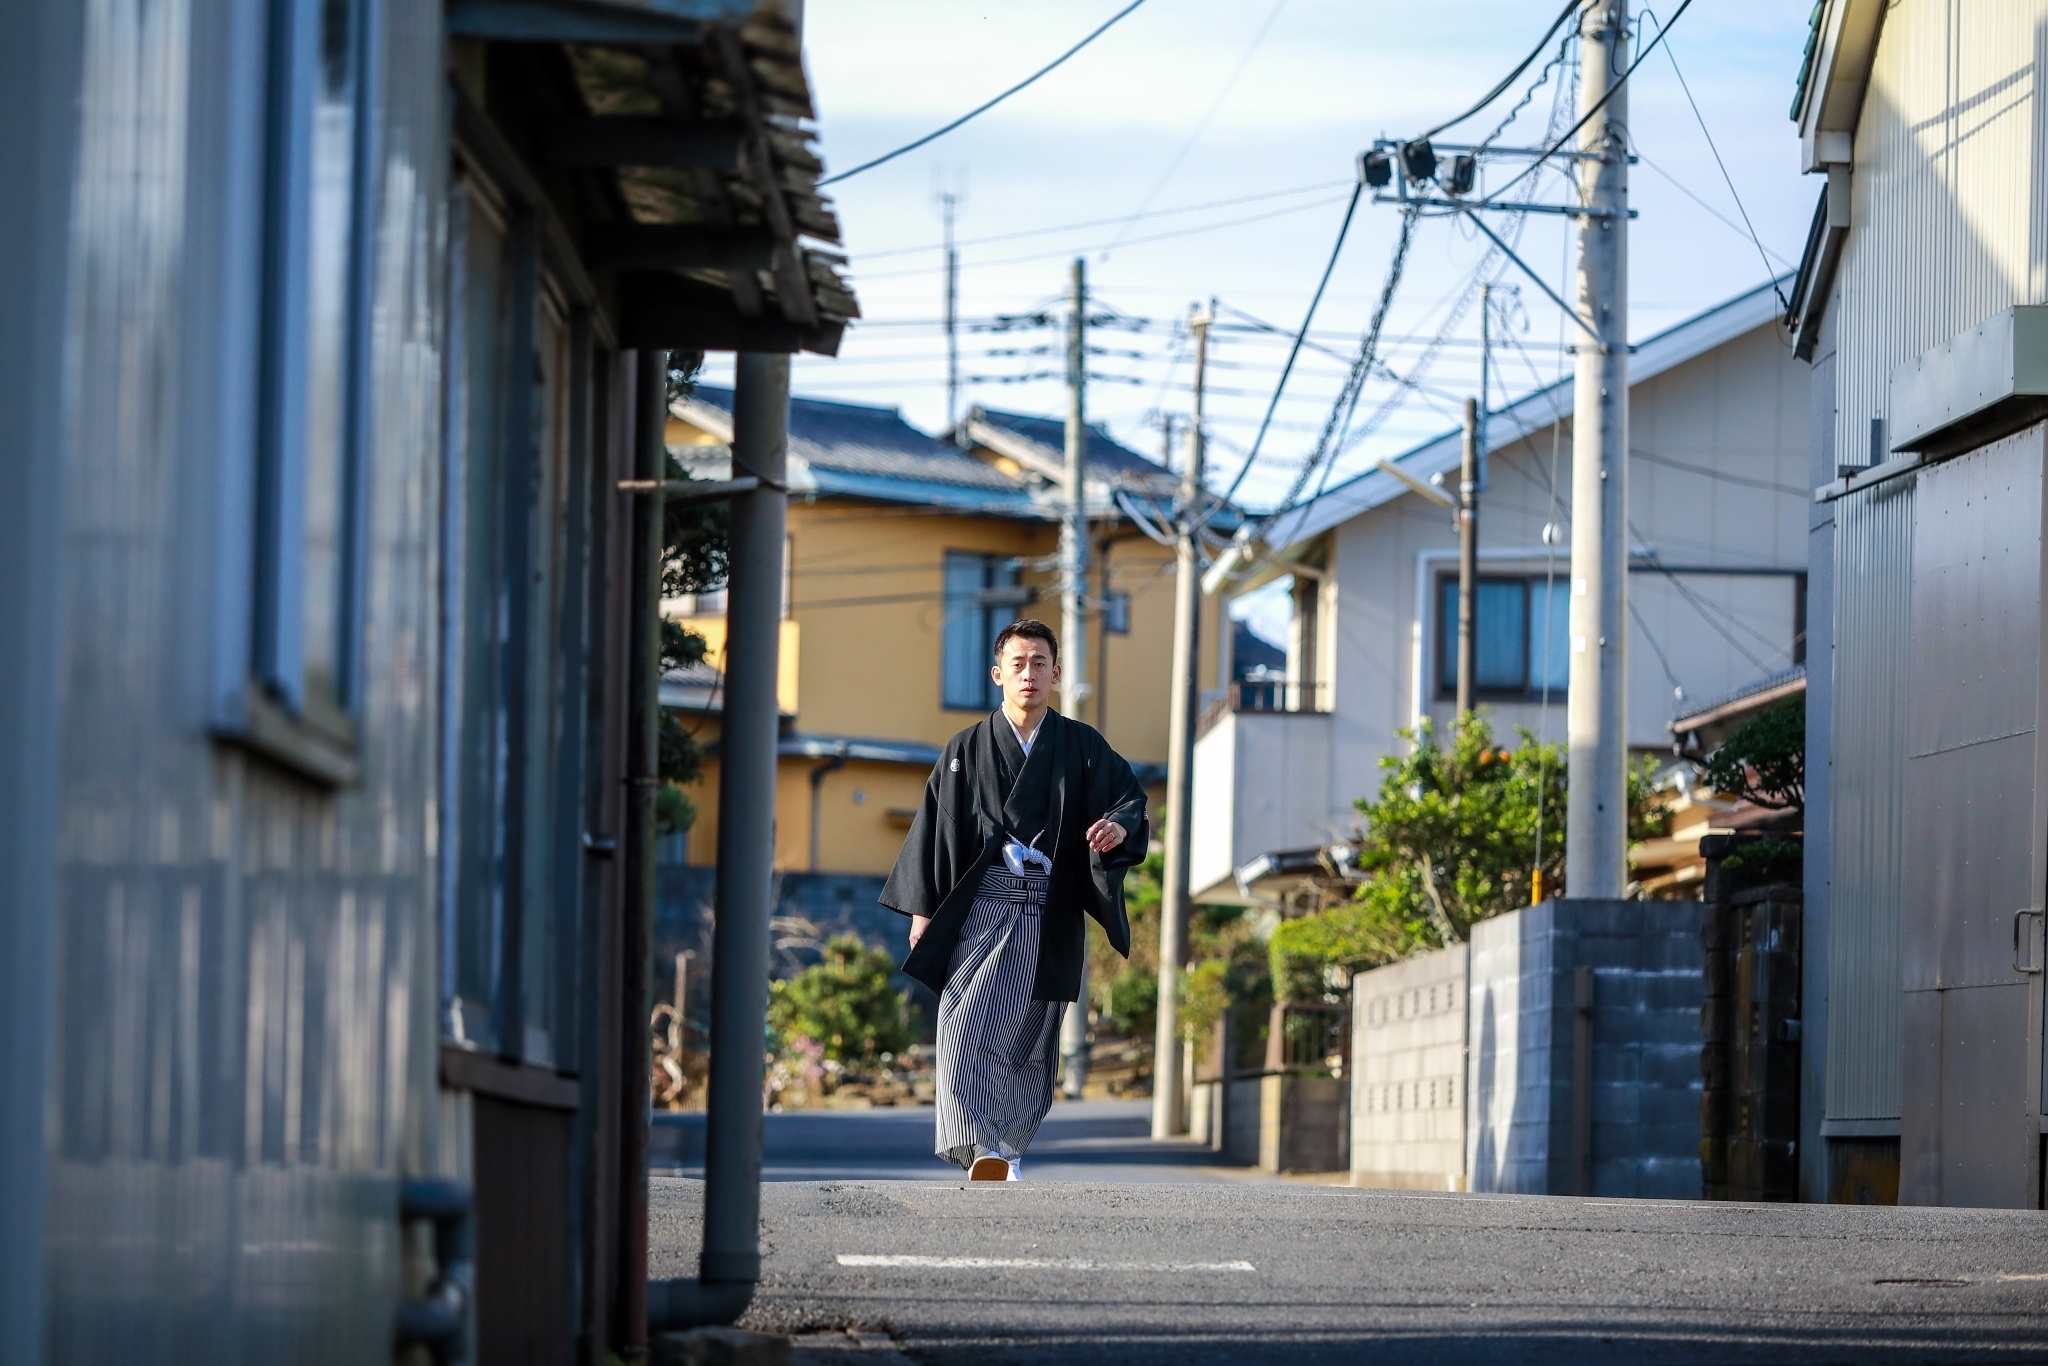 街並みの風景に溶け込む一瞬 新郎さんのかっこいい姿見てください 千葉 市川 オリジナル結婚式のフリーランスウェディングプランナー